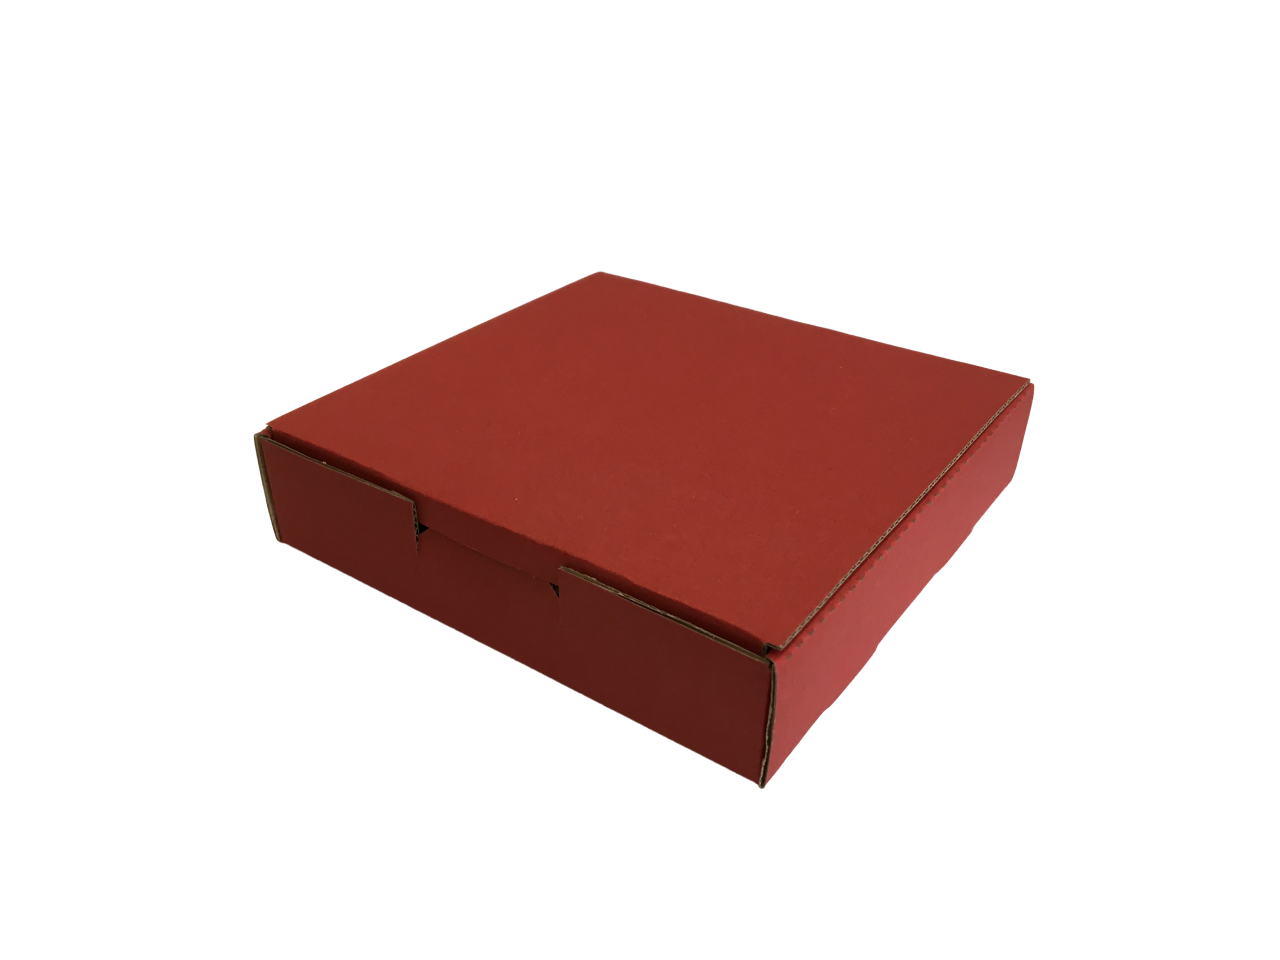 Színes doboz, Kis méretű önzáró tároló doboz (130x130x30 mm) Színes doboz, Kis méretű, felnyitható tetejű önzáródó hullámkarton tároló doboz

Felhasználás: 
Kisebb méretű tárgyak tárolására alkalmas közepes méretű önzáródó színes hullámkarton tároló doboz.

Méret: 130 x 130 x 30 mm - színes hullámkarton tároló doboz
Kivitel: Fefco 0421

Anyag: színes mikrohullám karton papír, bordó és fekete színekben.
